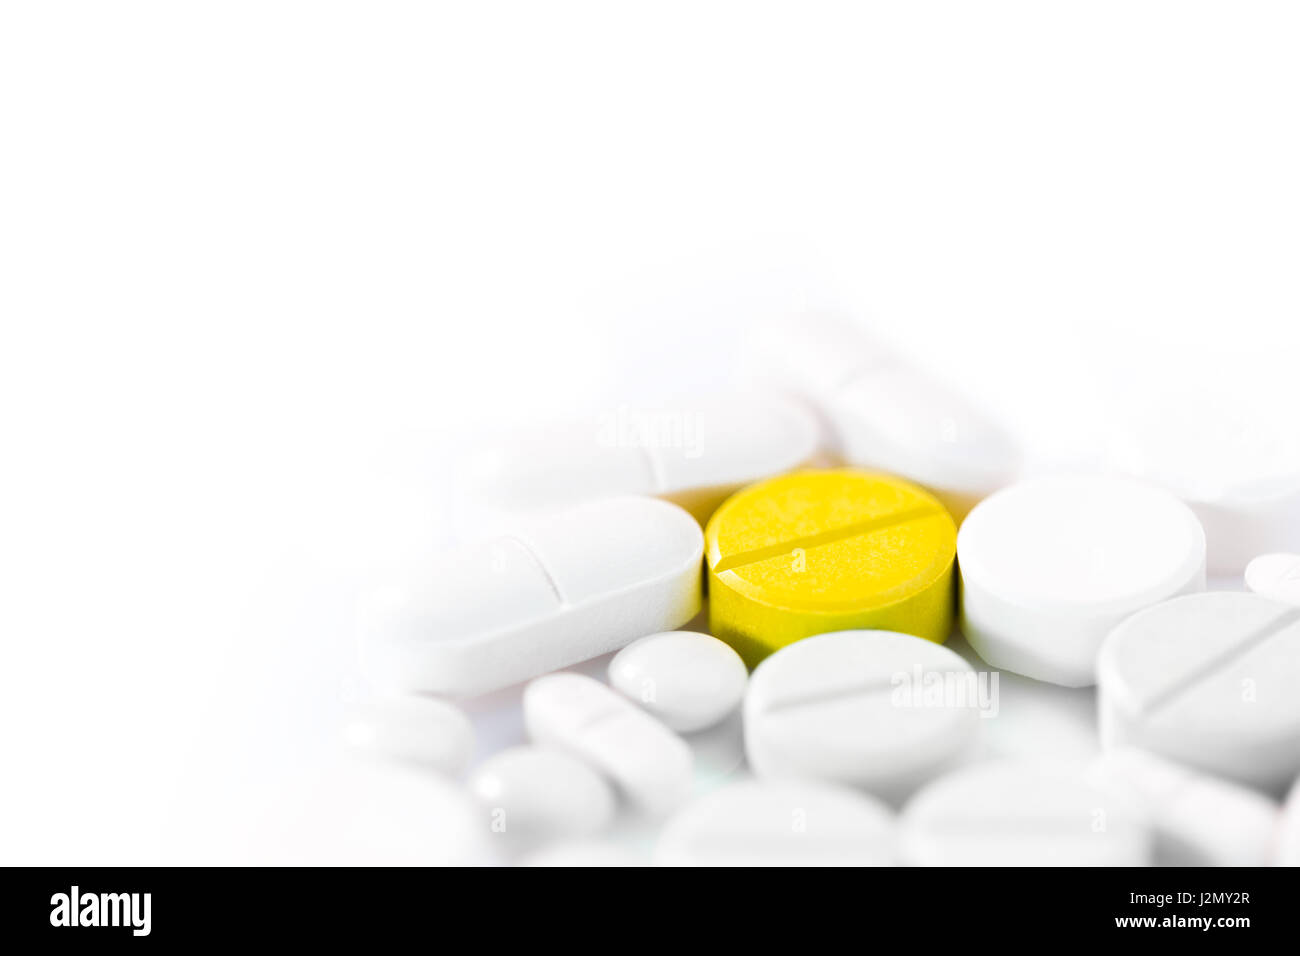 Medizin-Pillen in a Formen, Farben und Größen auf weißem Hintergrund, selektiven Fokus mit geringen Schärfentiefe auf die gelbe Pille, Raum für copys Stockfoto